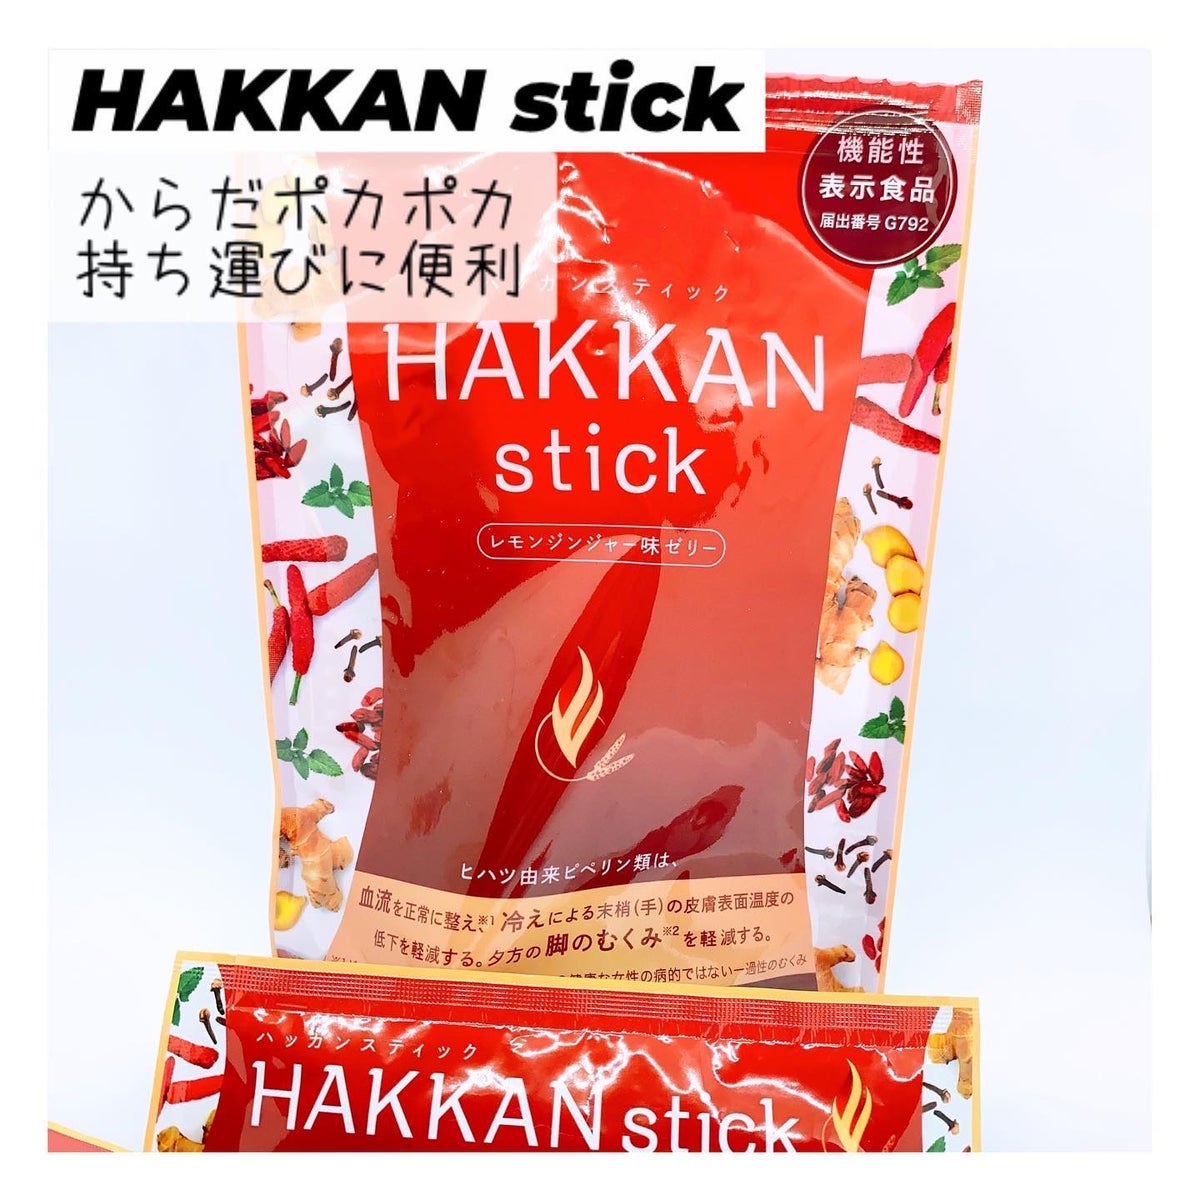 試してみた】HAKKAN stick / LAVAのリアルな口コミ・レビュー | LIPS